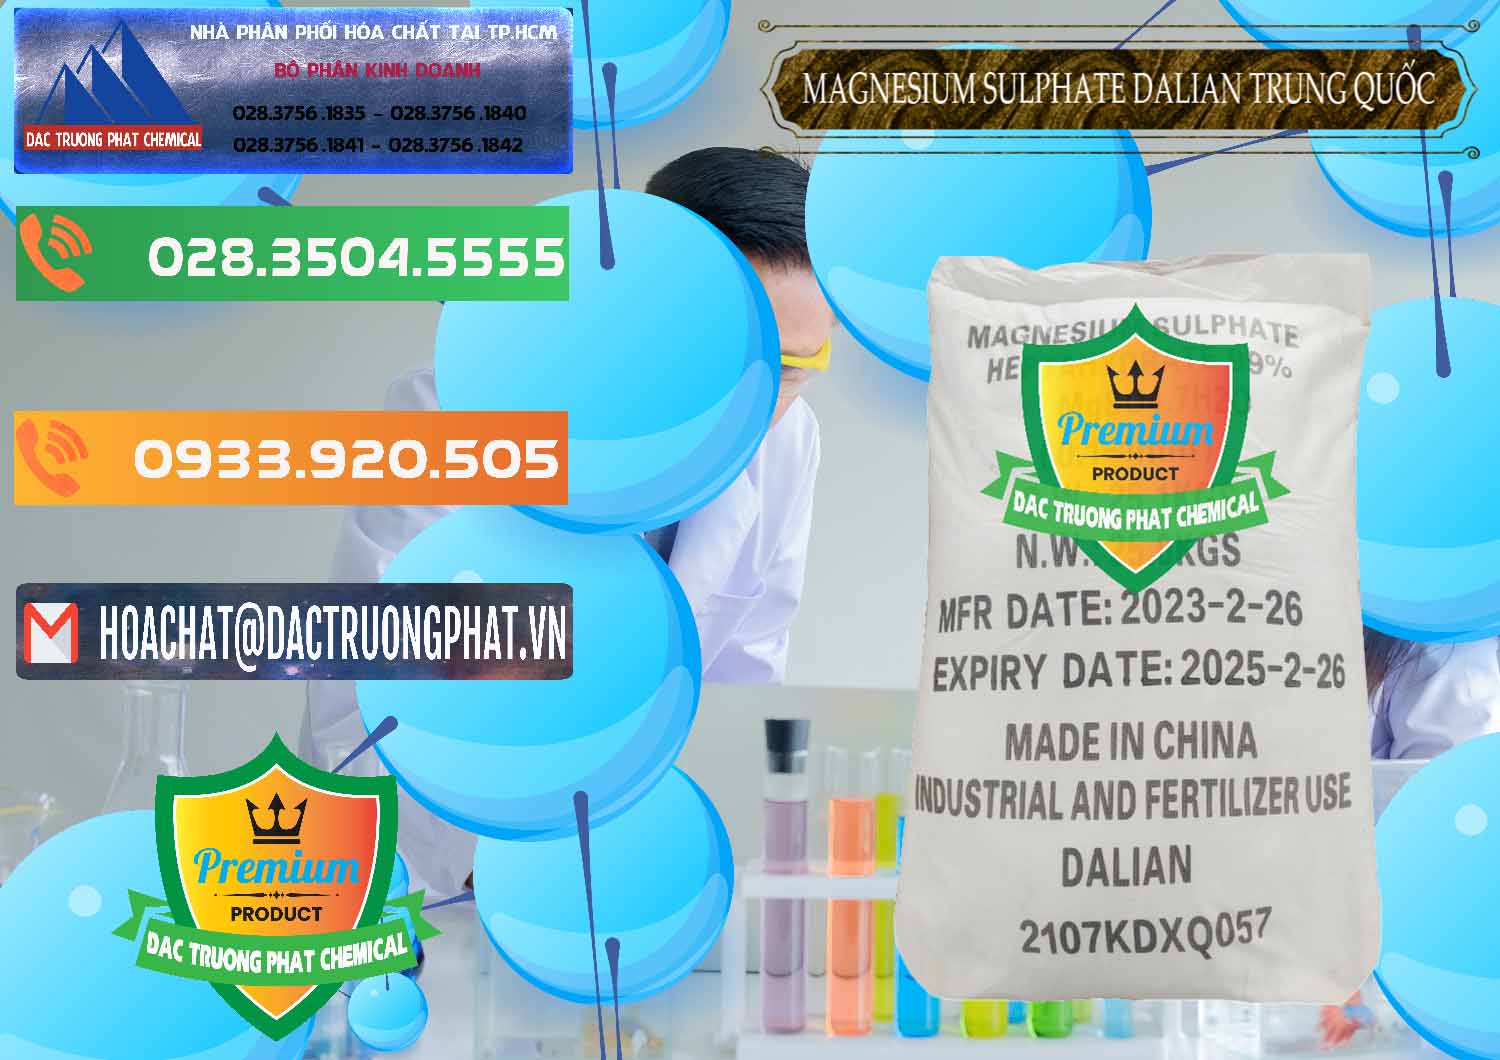 Nơi chuyên cung ứng và bán MGSO4.7H2O – Magnesium Sulphate Heptahydrate Dalian Trung Quốc China - 0393 - Đơn vị kinh doanh ( cung cấp ) hóa chất tại TP.HCM - hoachatxulynuoc.com.vn